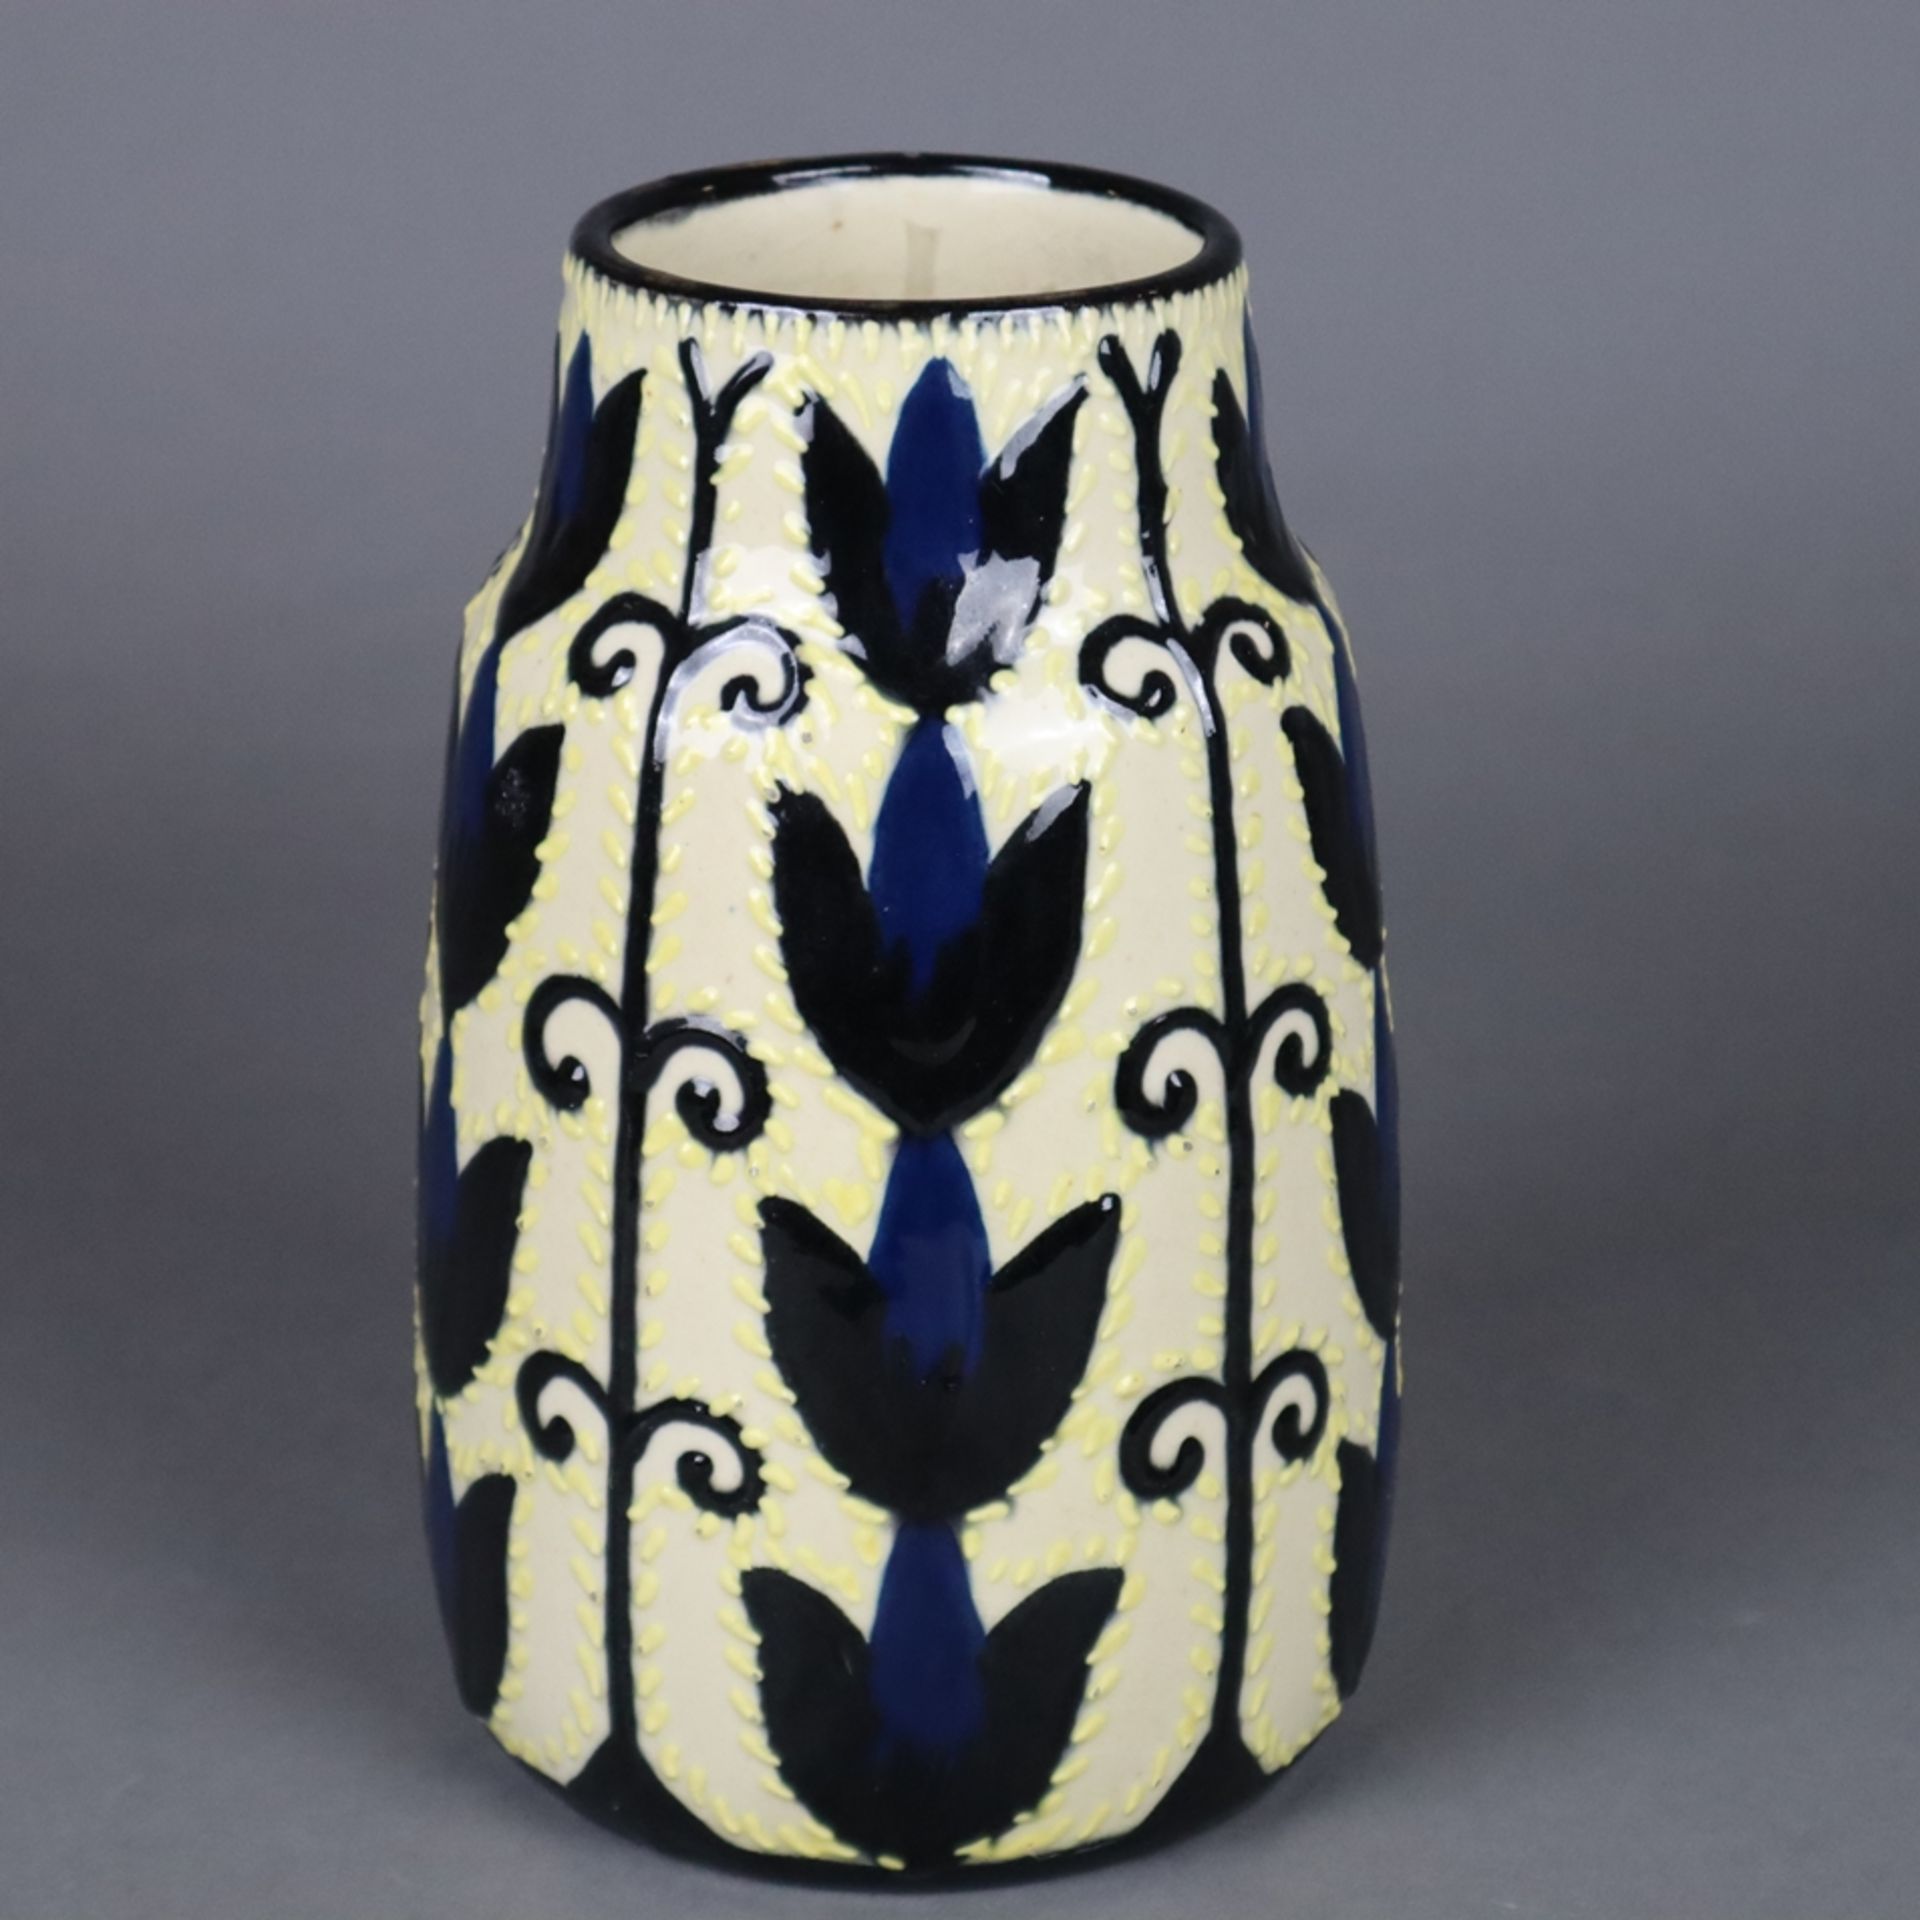 Keramikvase - Tonwerke Kandern, nach 1915, Mod.nr.: 953, konisch zulaufende For